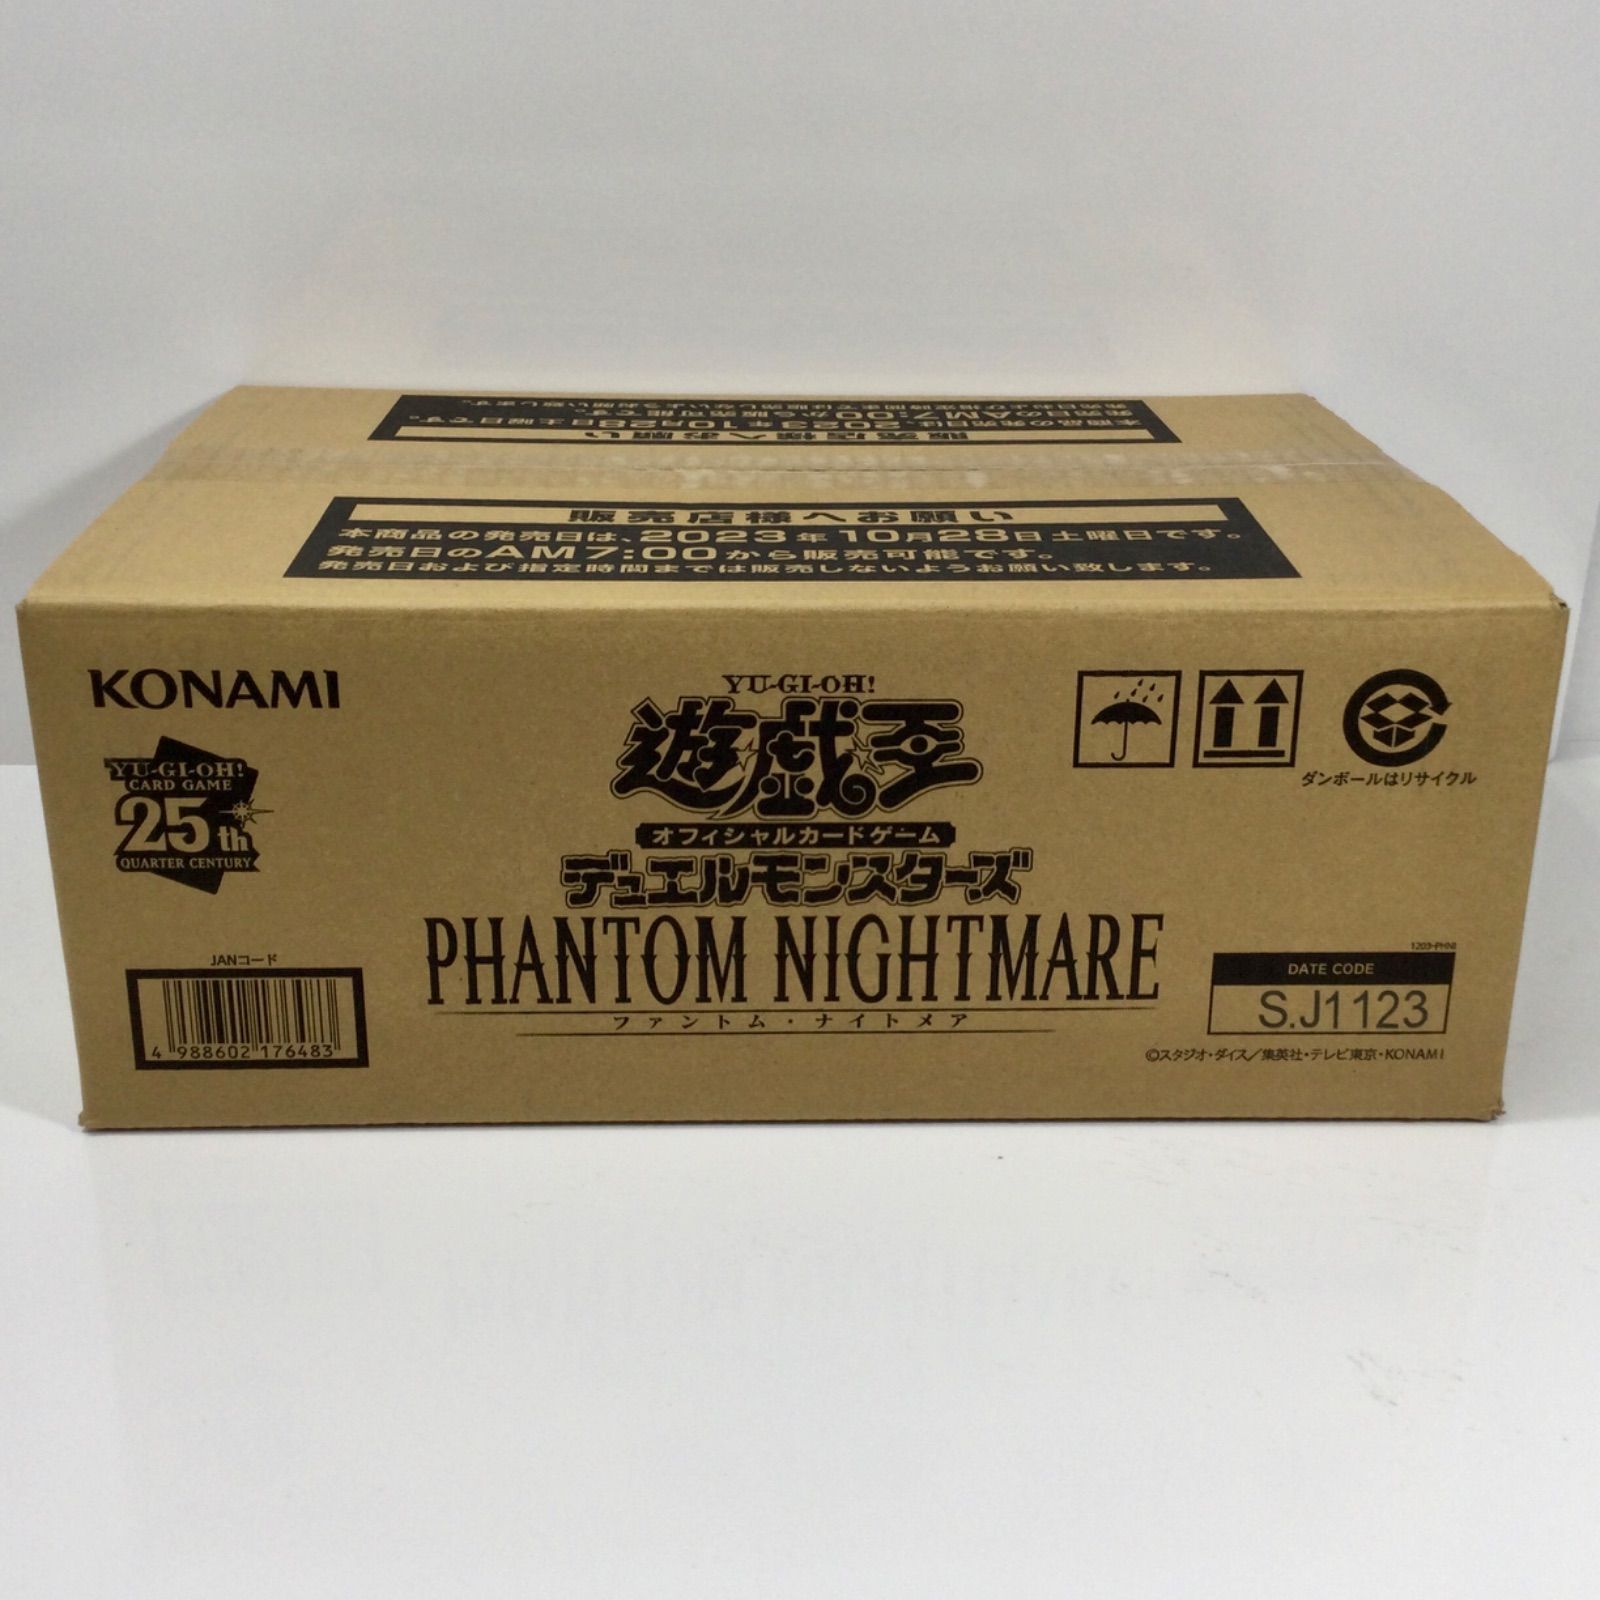 遊戯王 ファントムナイトメア phantom nightmare 5box - fawema.org